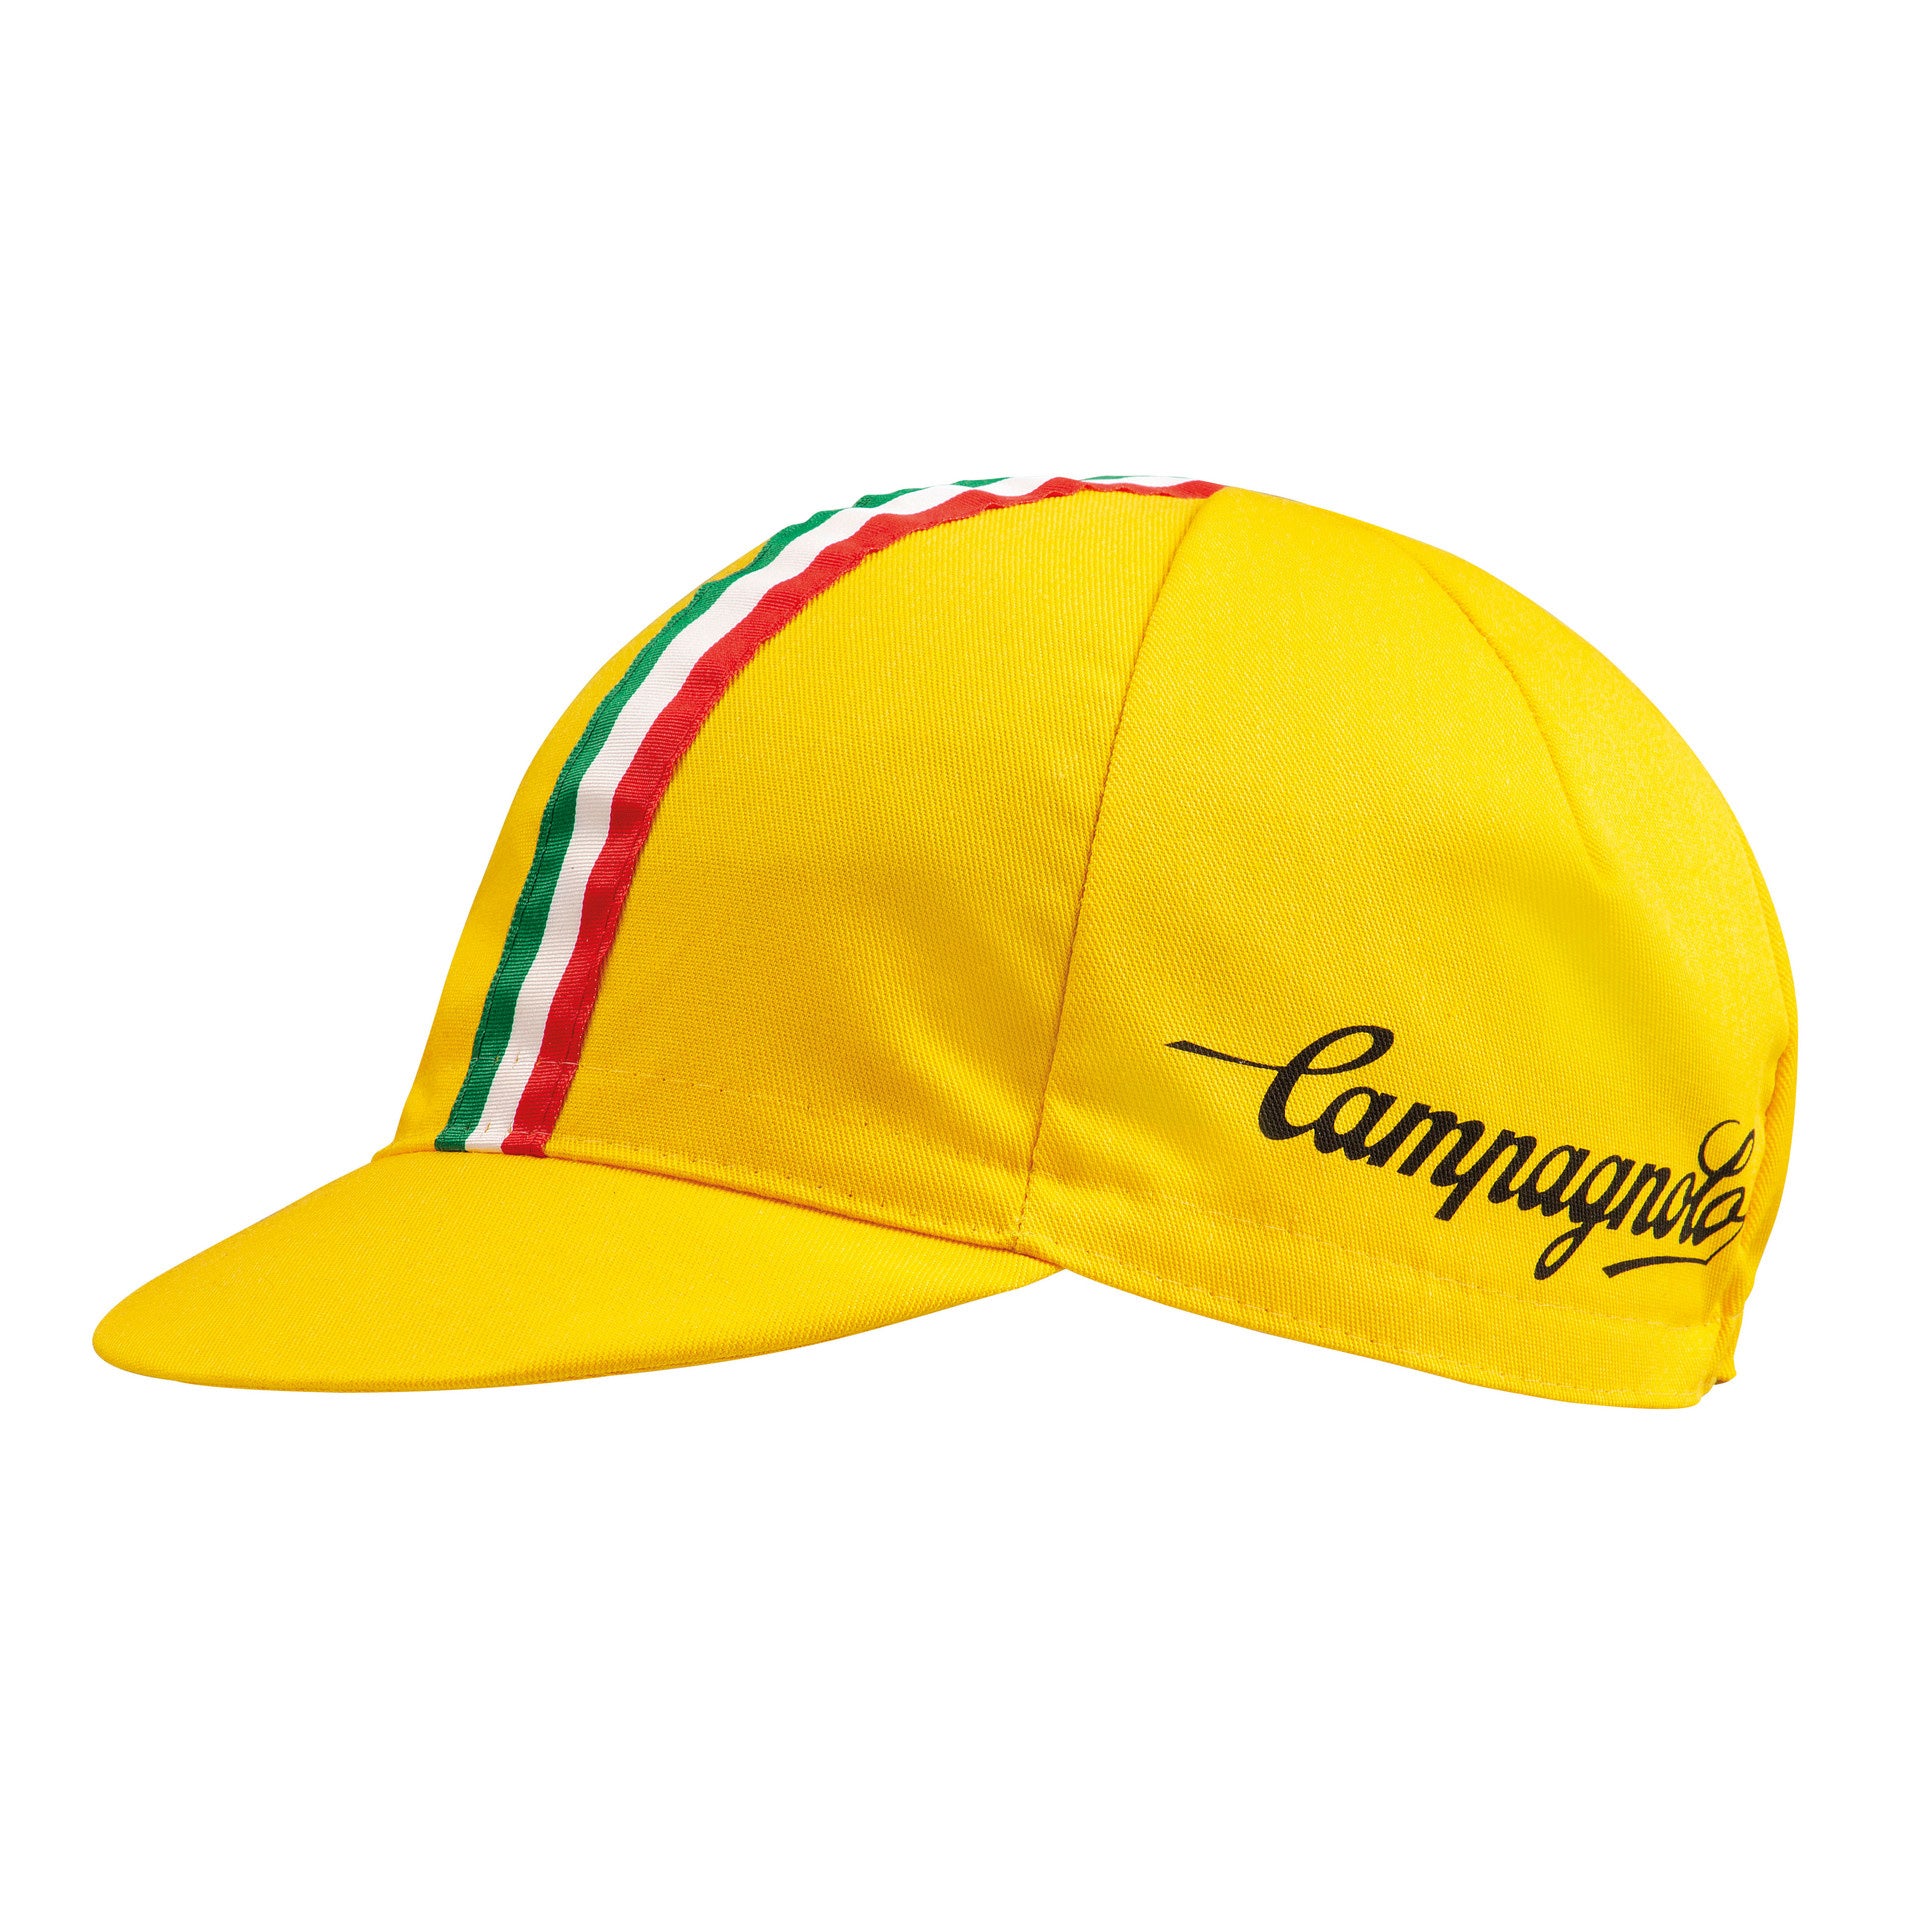 yellow cycling cap